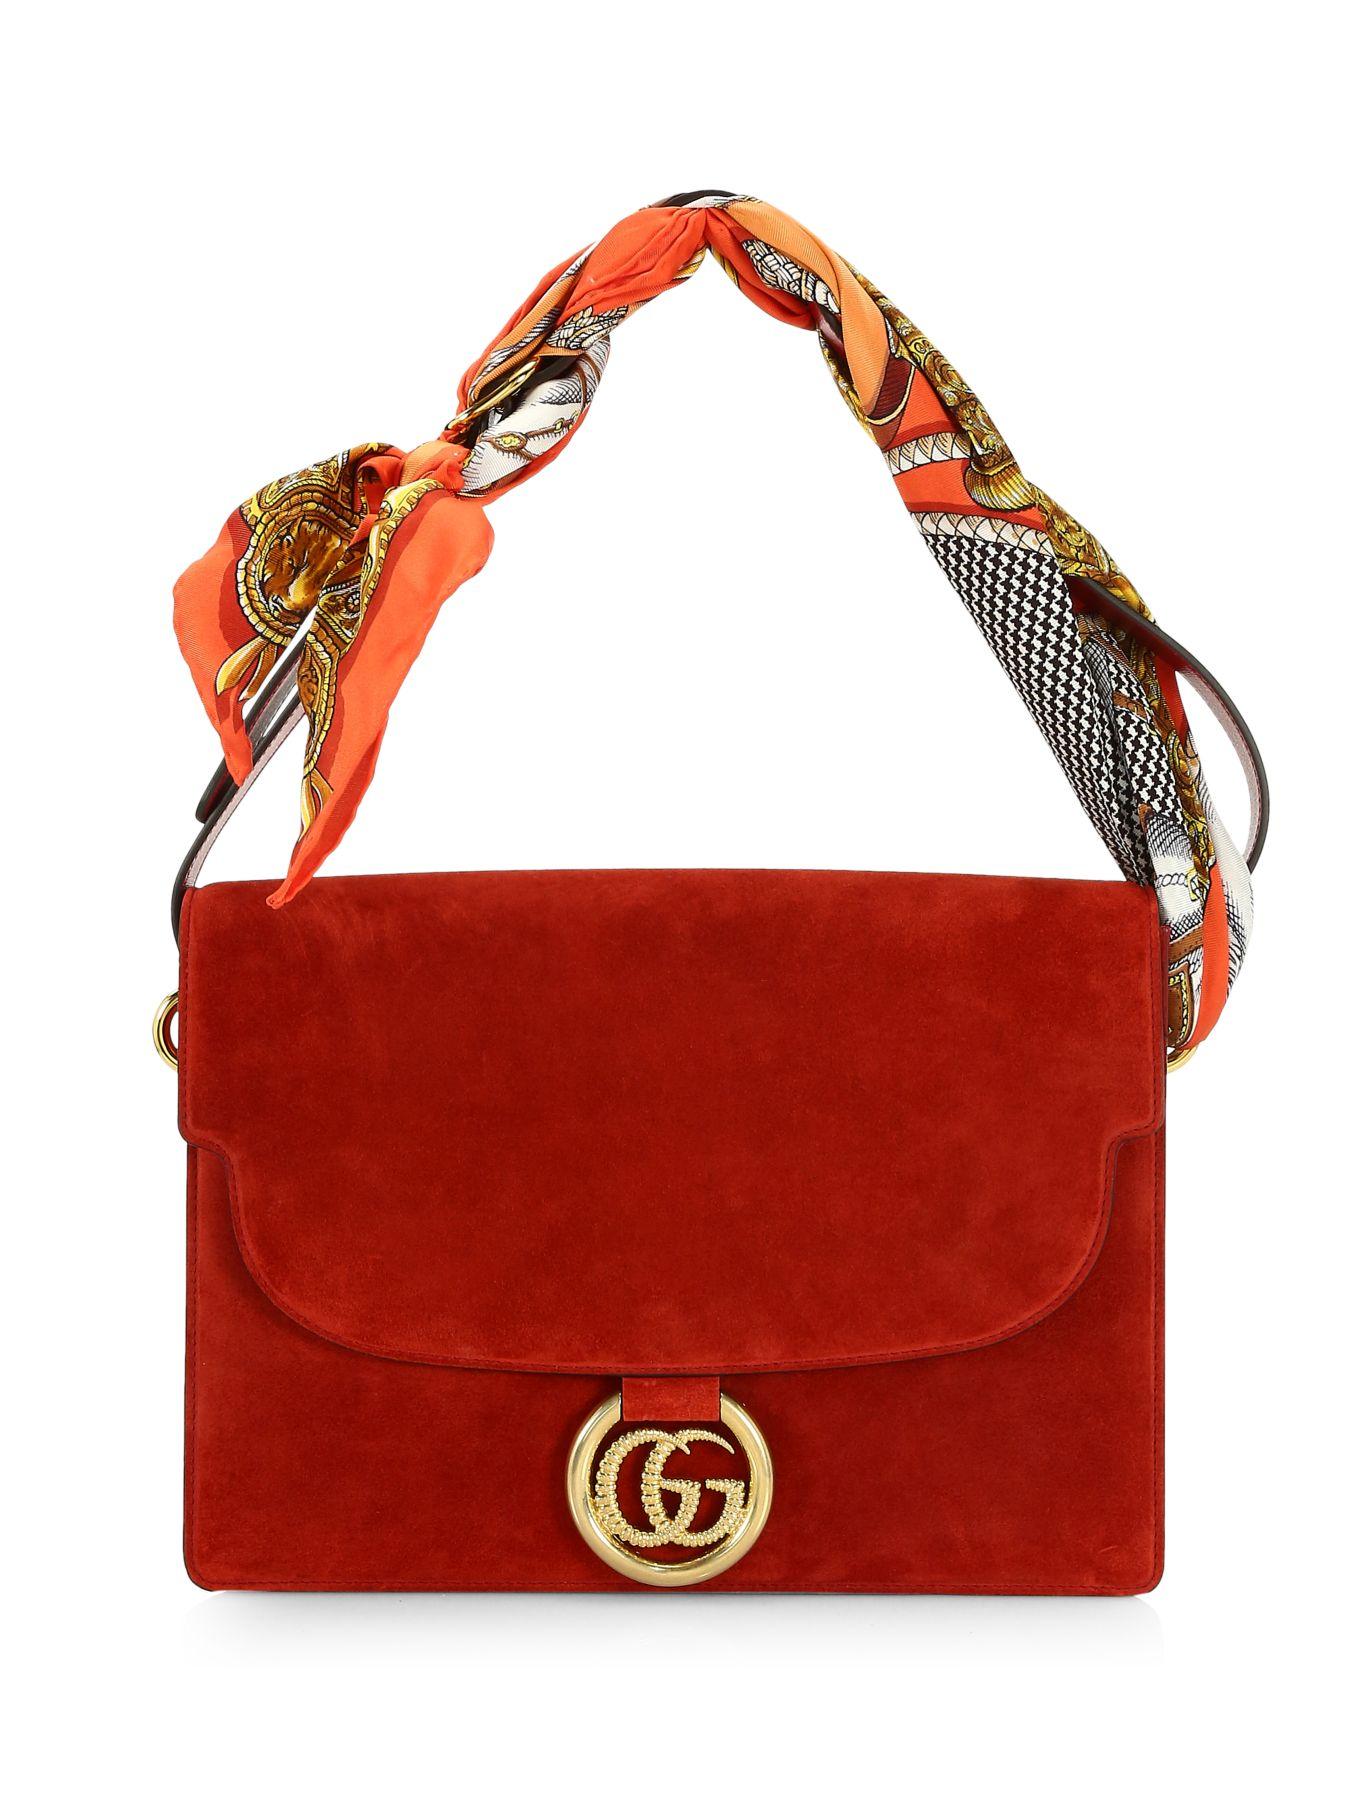 chokolade meddelelse Hård ring Gucci Medium Suede Shoulder Bag With Scarf in Red | Lyst